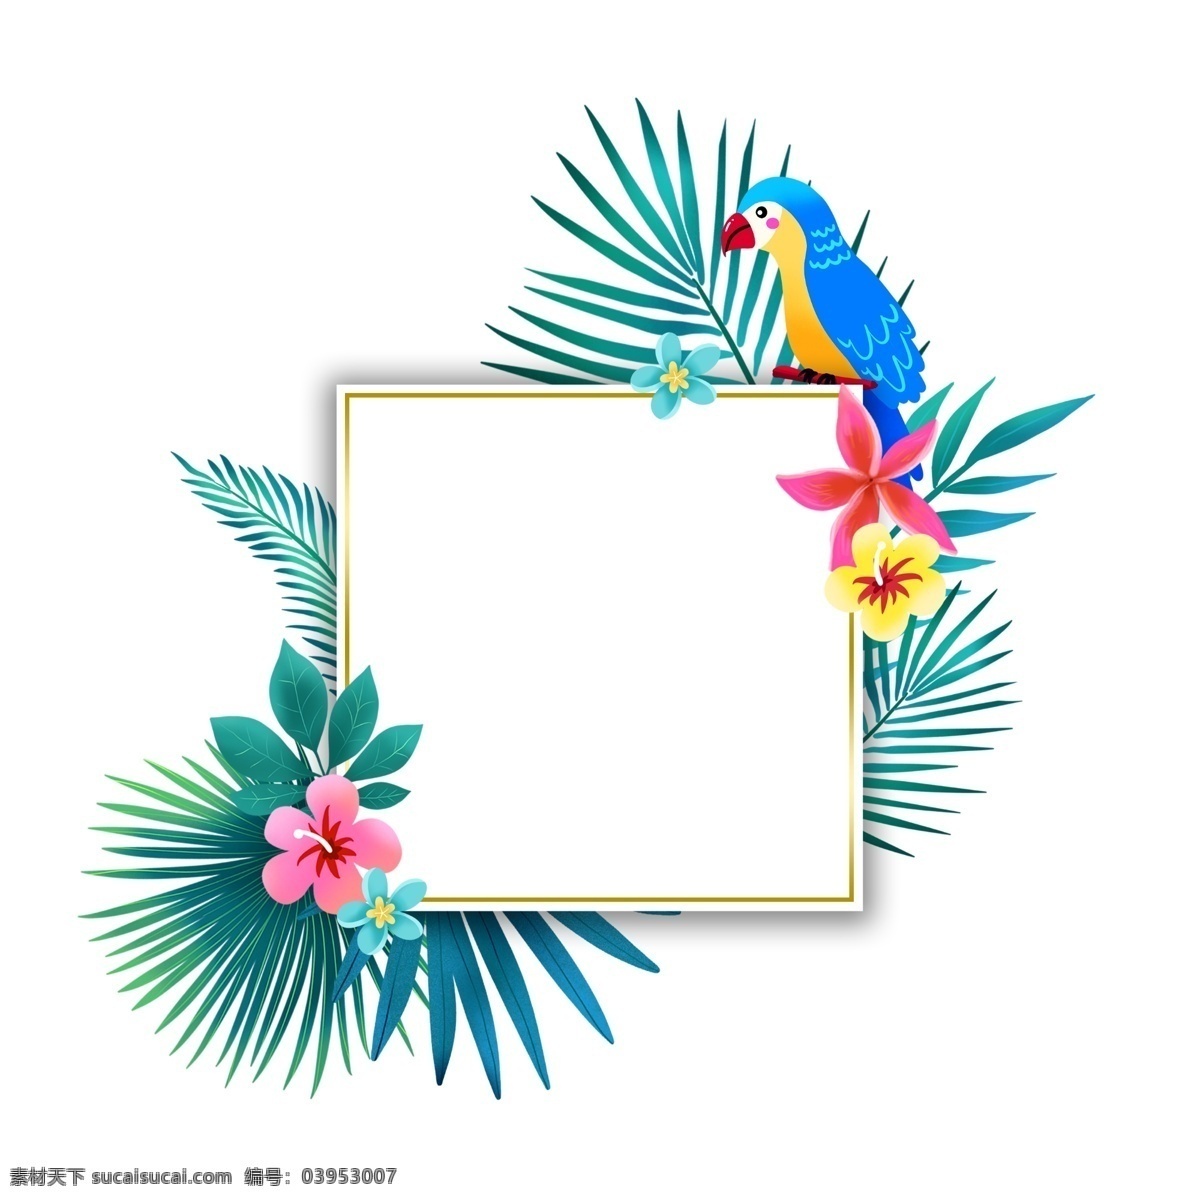 夏季 热带 植物 鹦鹉 边框 夏天 春夏 花朵 度假 叶子 绿色 蓝色鹦鹉